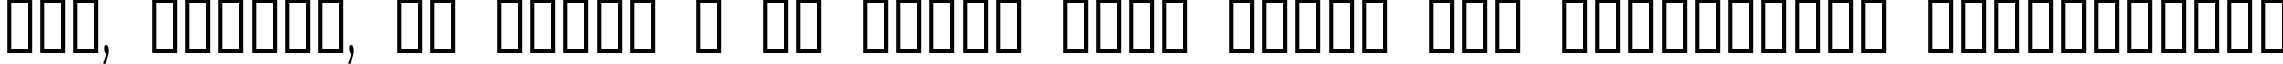 Пример написания шрифтом Acadian Cyr текста на украинском